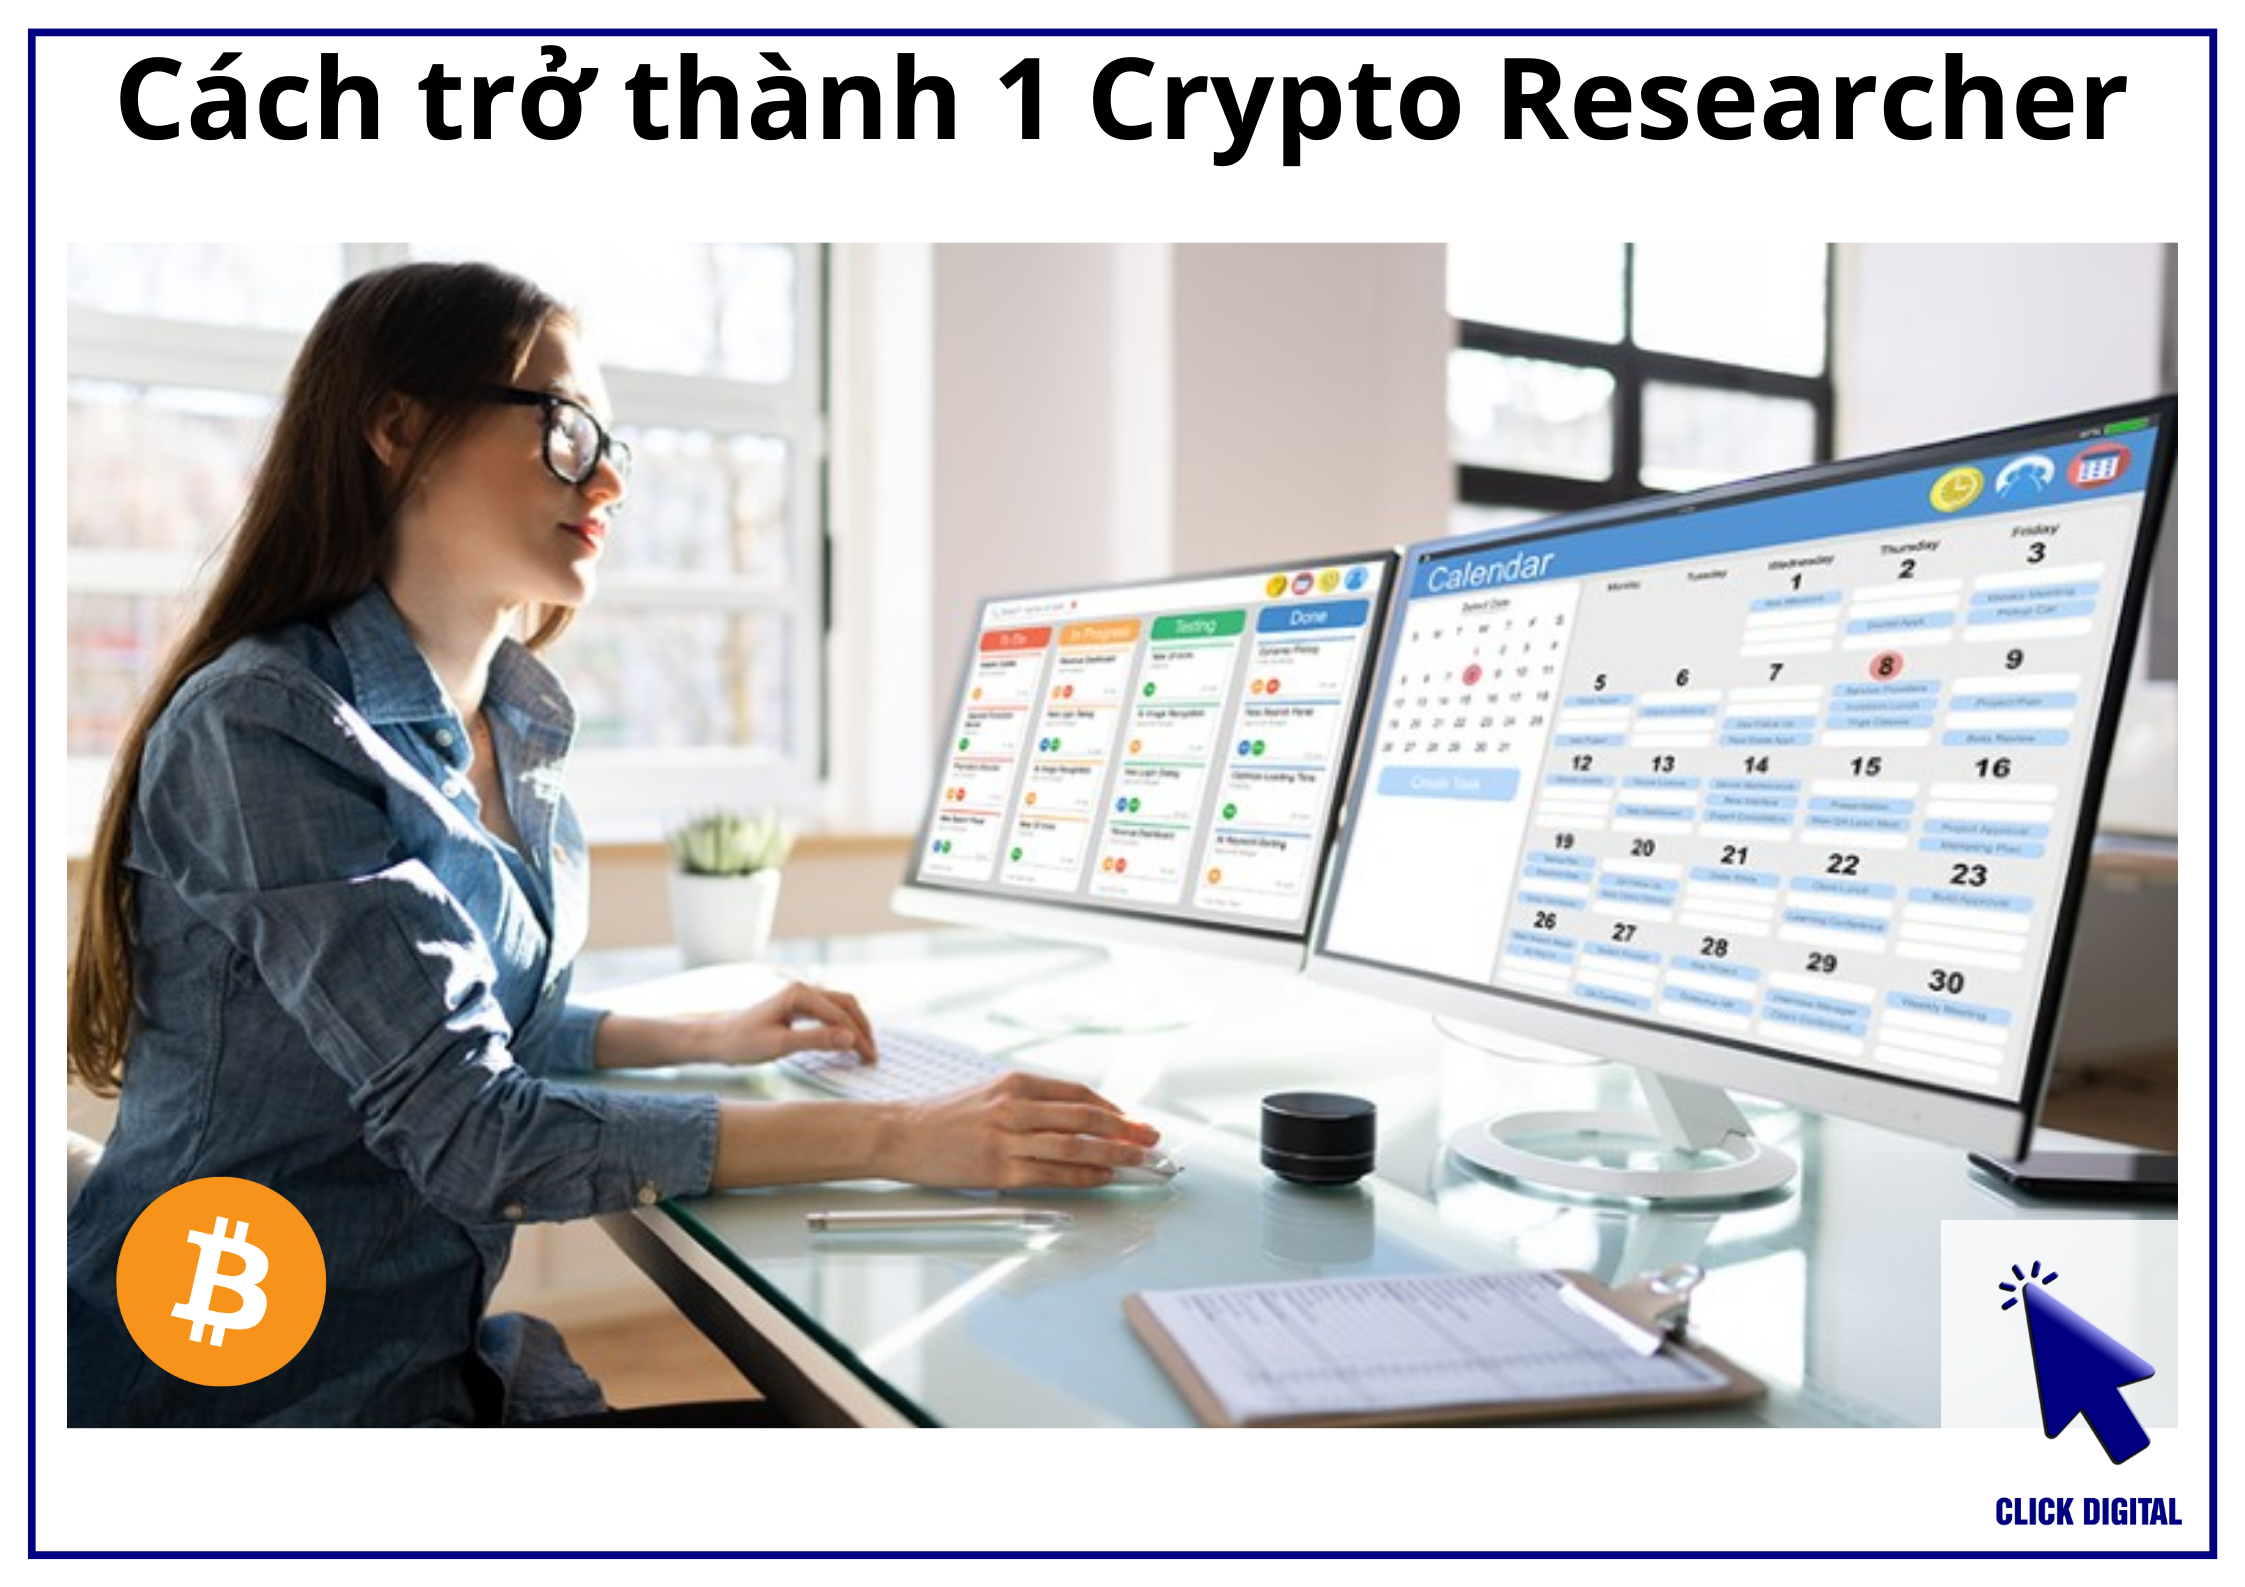 Crypto Researcher: Cách trở thành Nhà Nghiên cứu và Phân tích Tiền điện tử